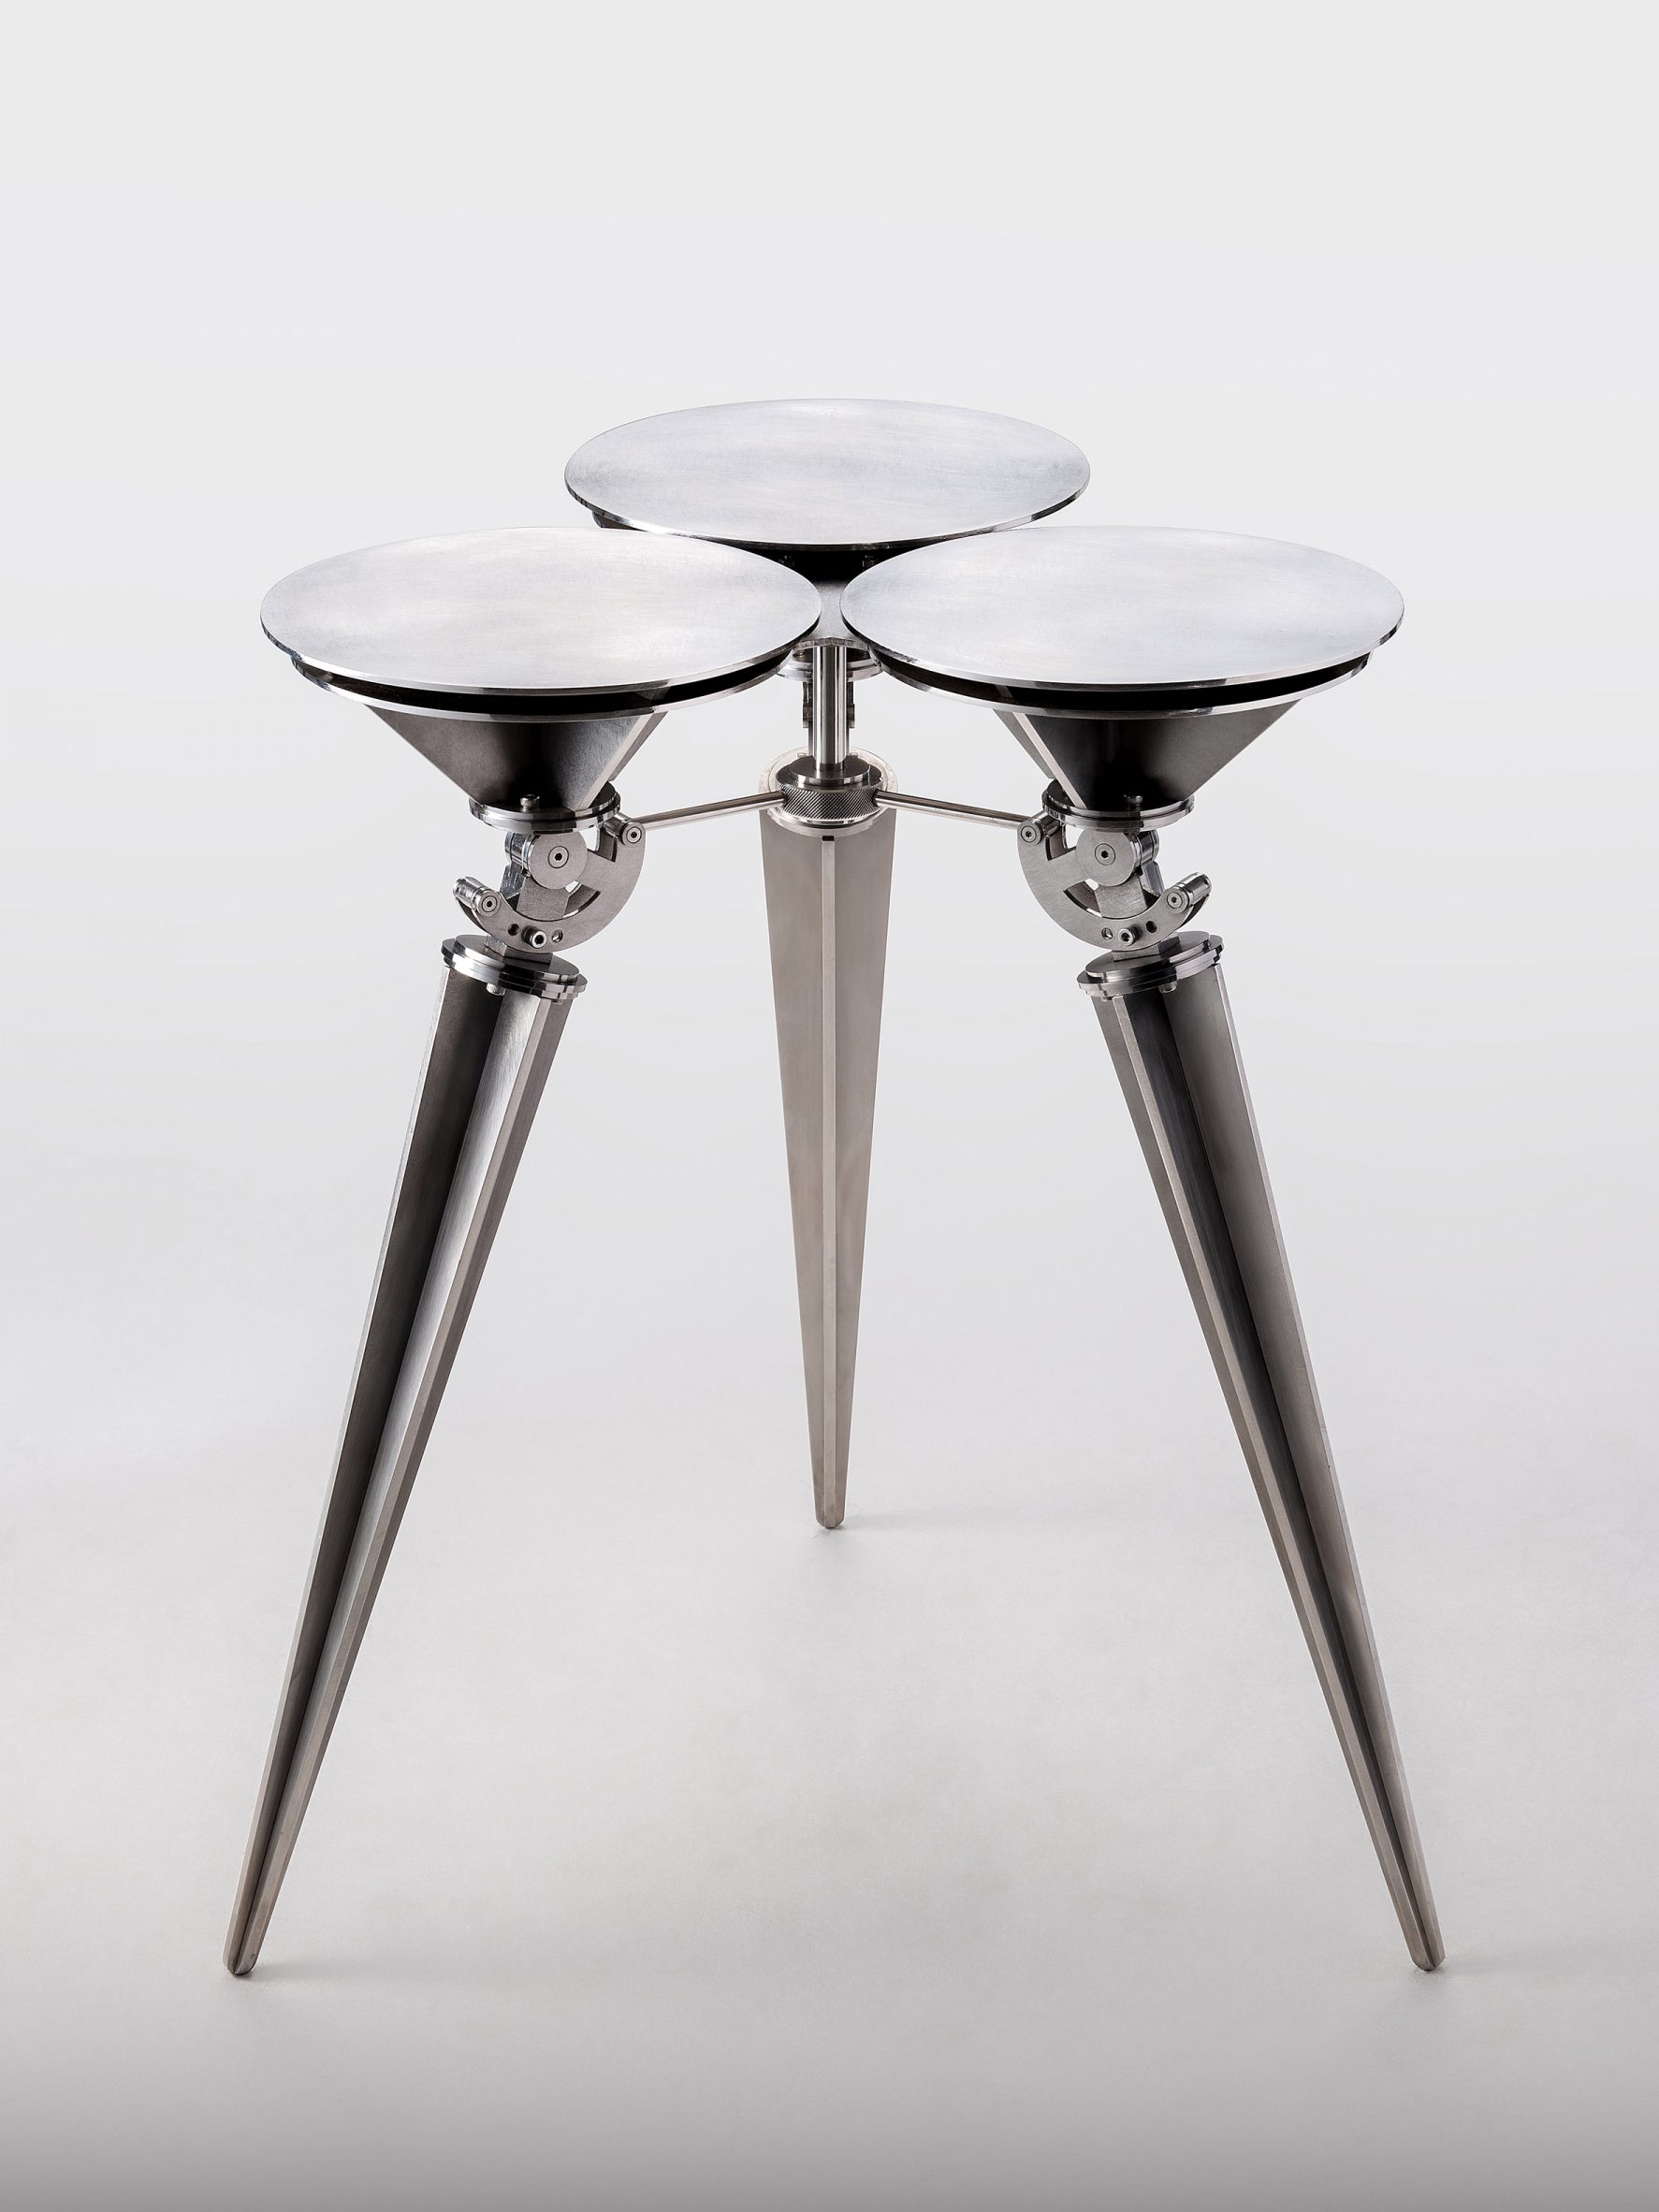 Steel stool by Sukchulmok